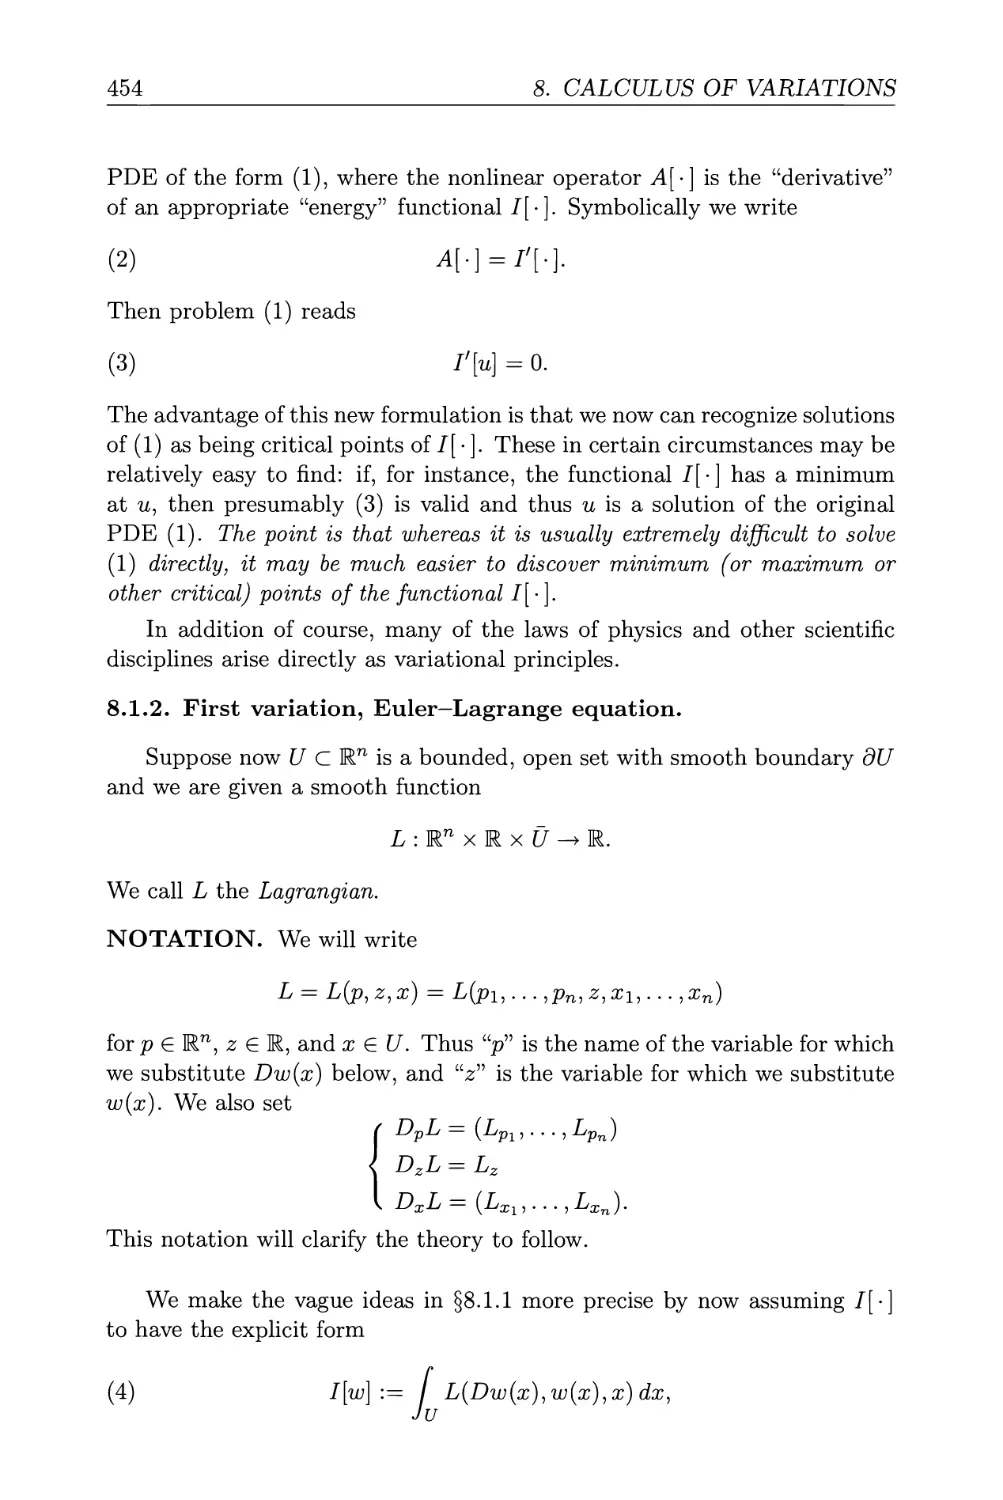 8.1.2. First variation, Euler-Lagrange equation